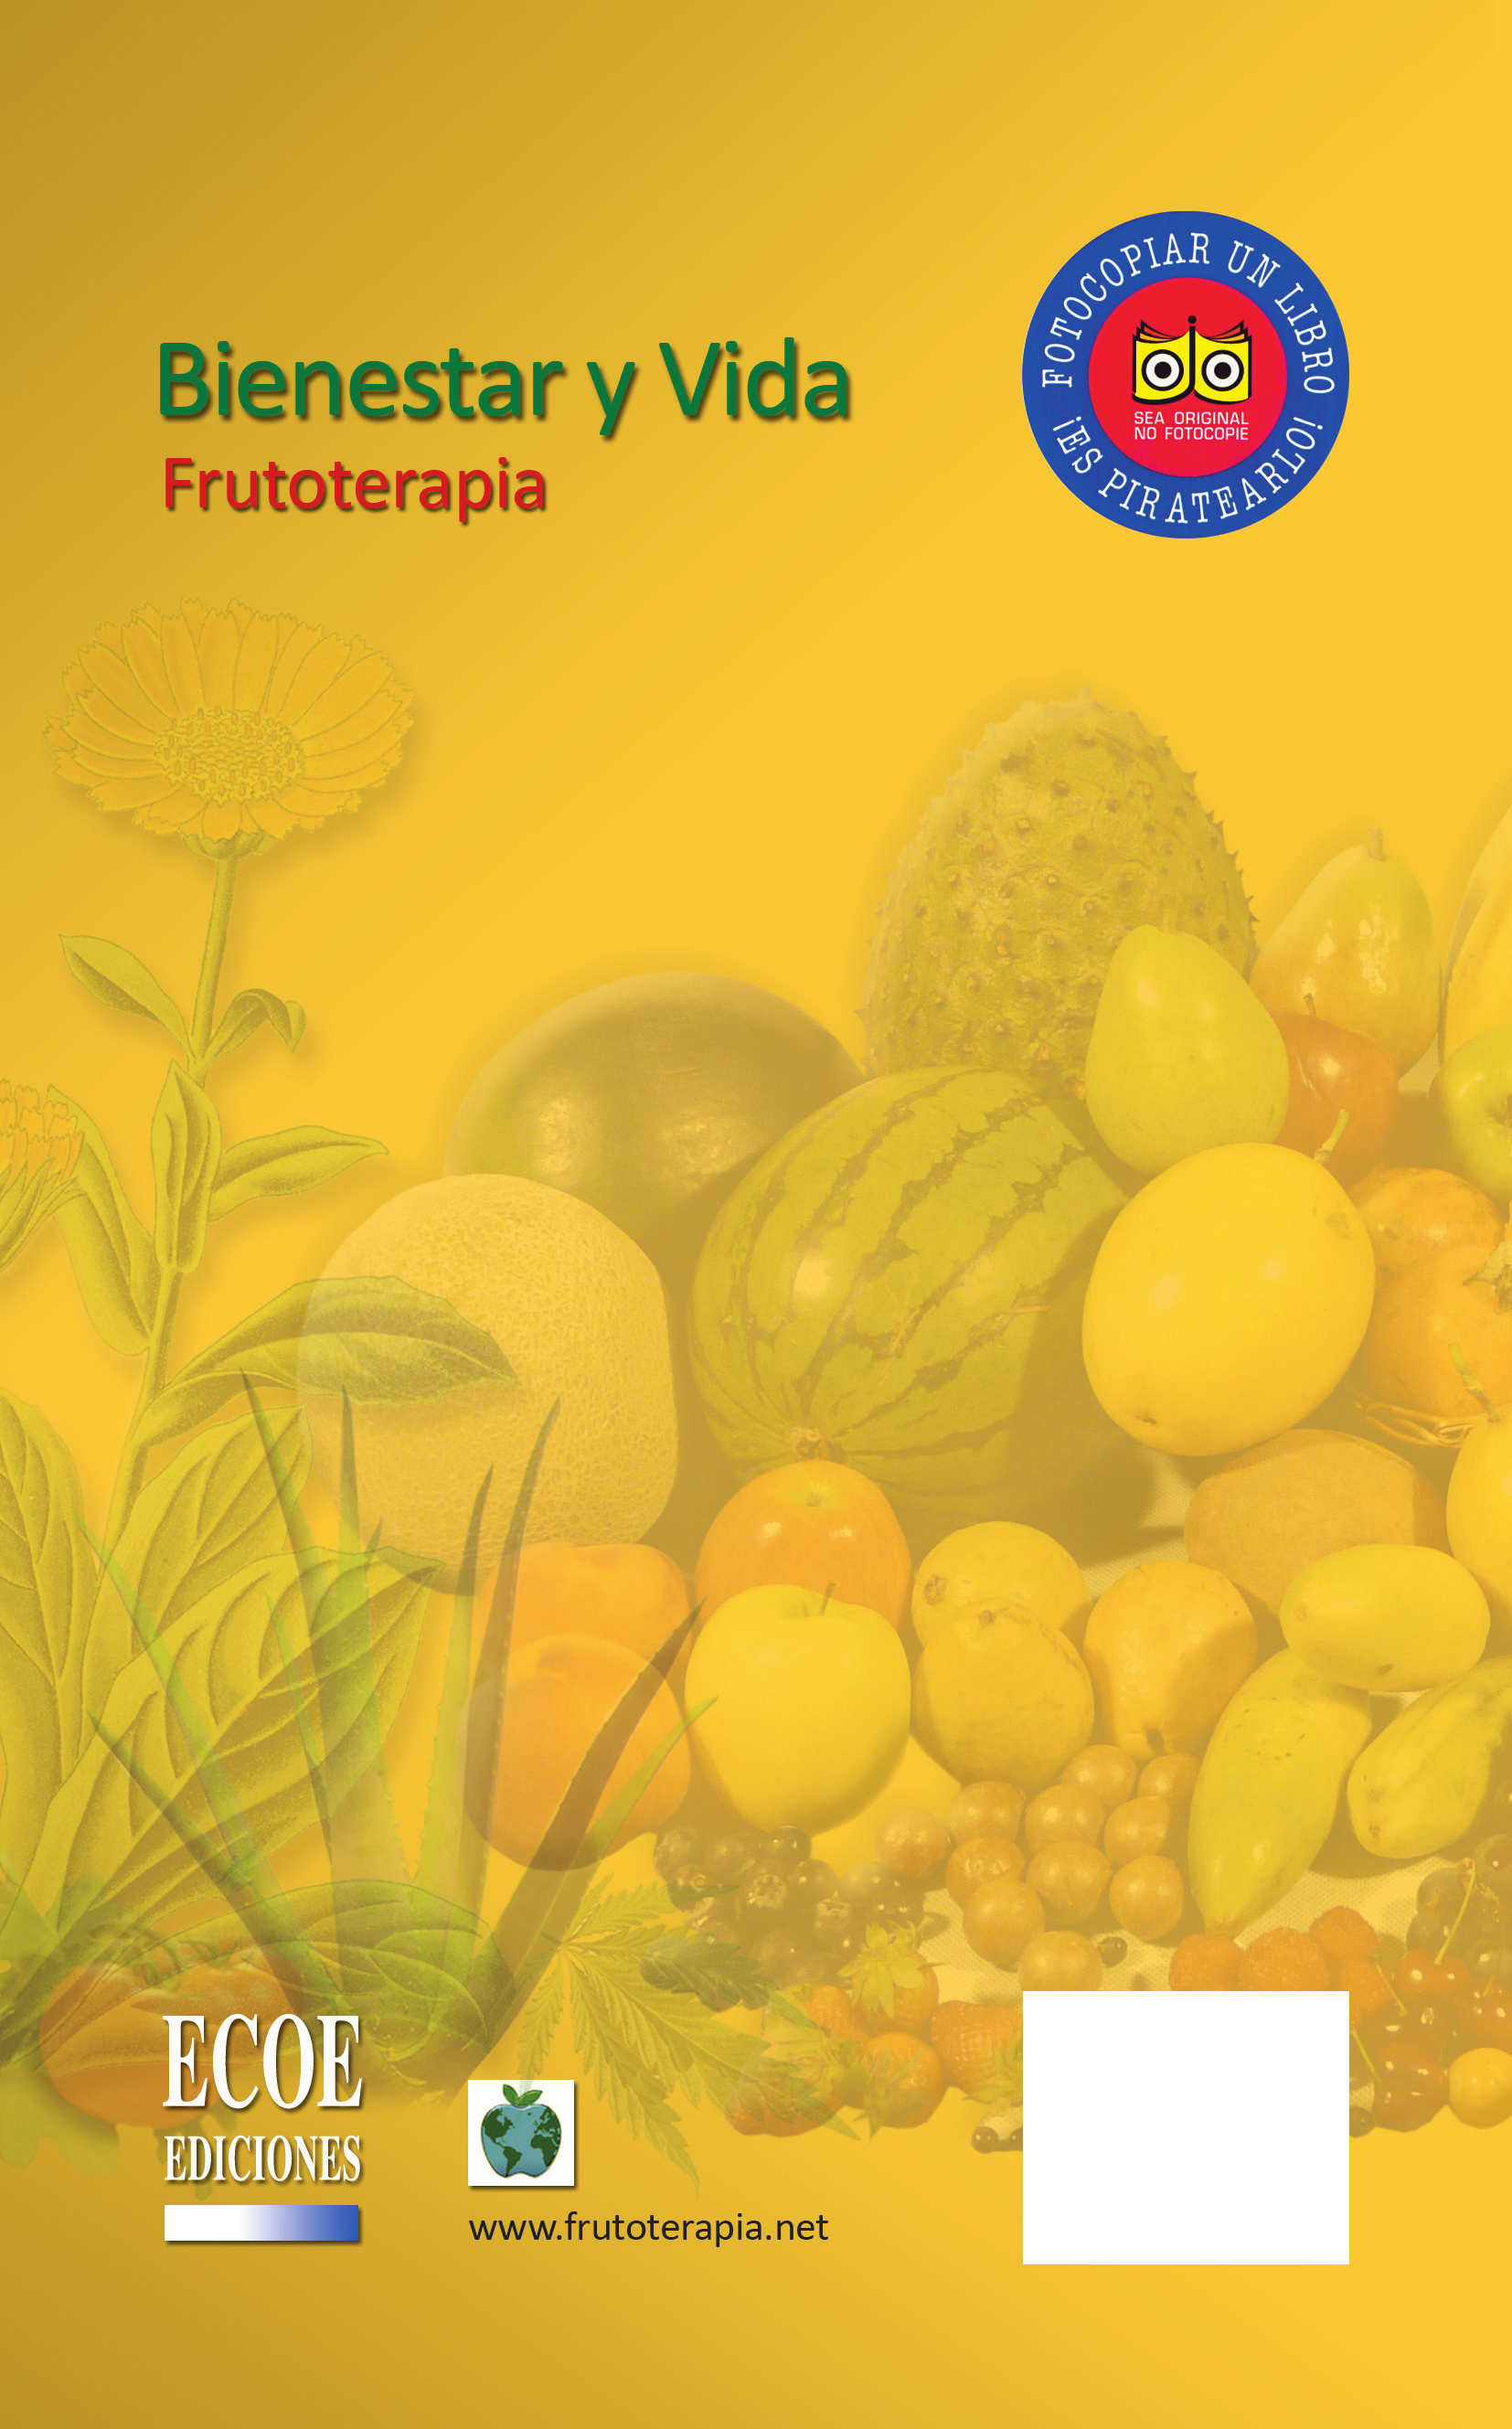 Frutoterapia: Los Frutos que dan la Vida, el poder terapéutico de 106 frutos describe las propiedades terapéuticas y nutricionales de las frutas.